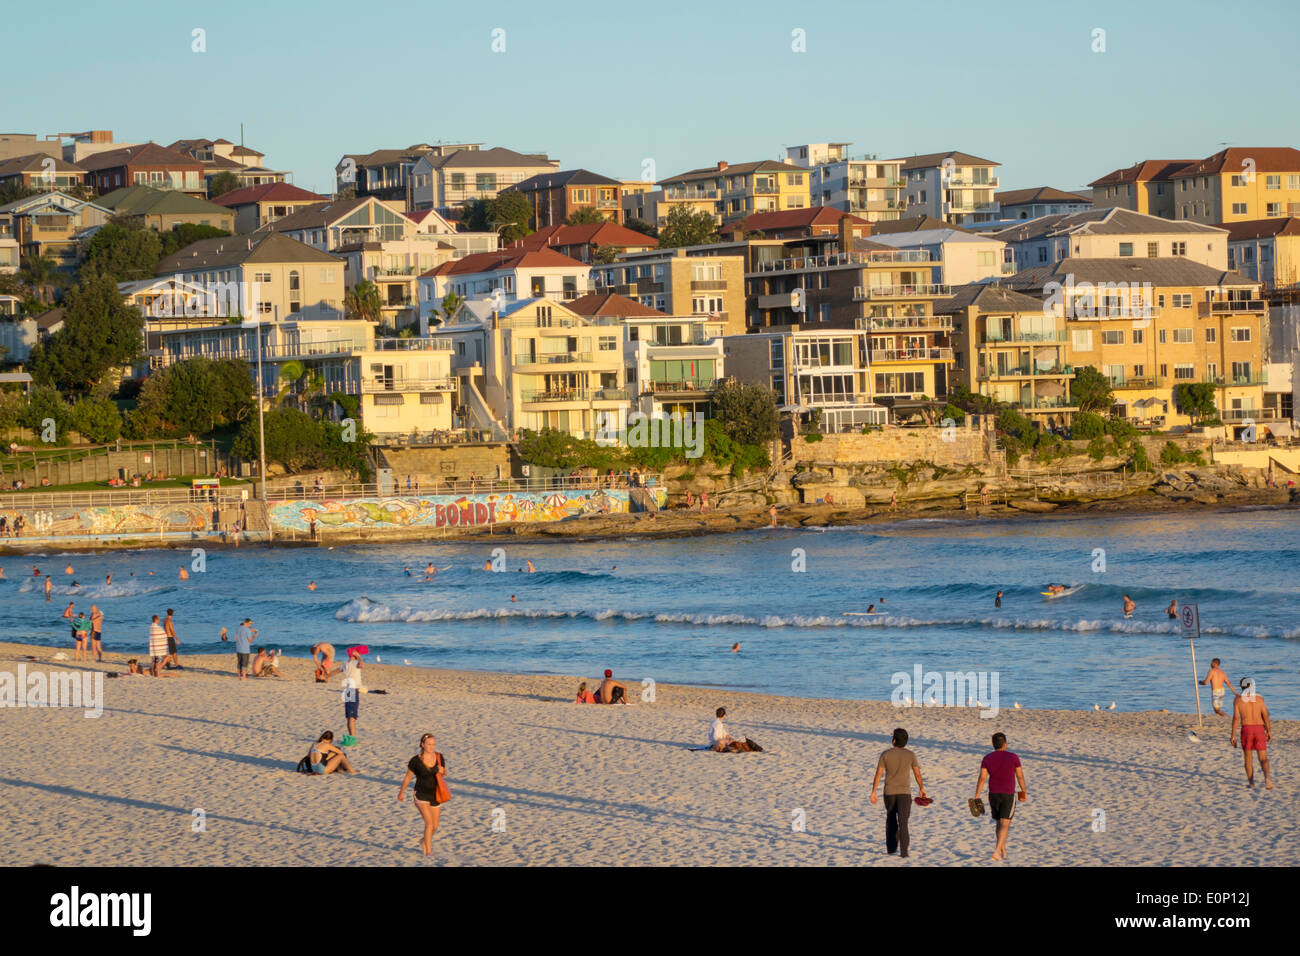 Sydney Australien, Bondi Beach, Pazifischer Ozean, Surfen, Wellen, Sand, öffentlich, North Bondi, Gebäude, Residenzen, AU140310237 Stockfoto